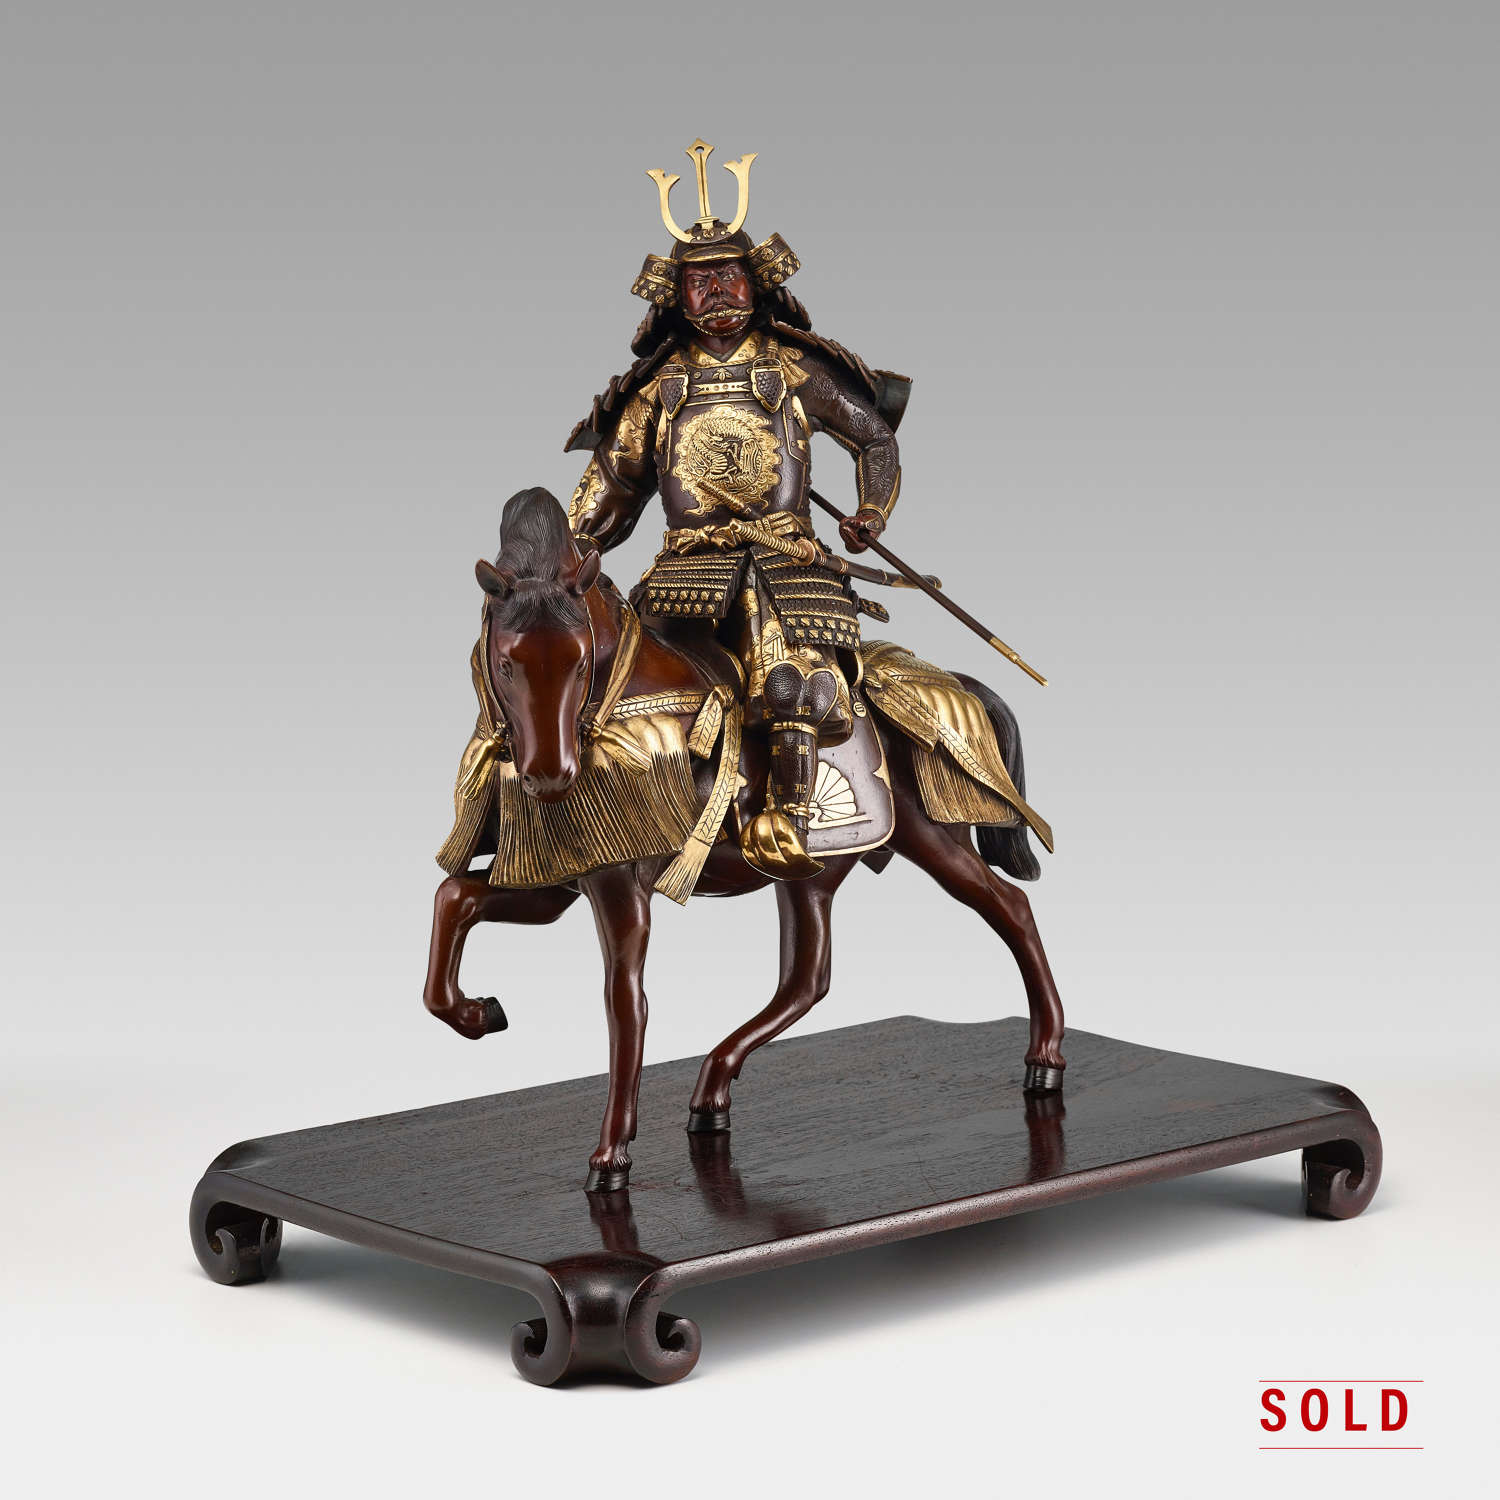 Japanese Samurai on horseback signed Yoshimitsu Meiji period